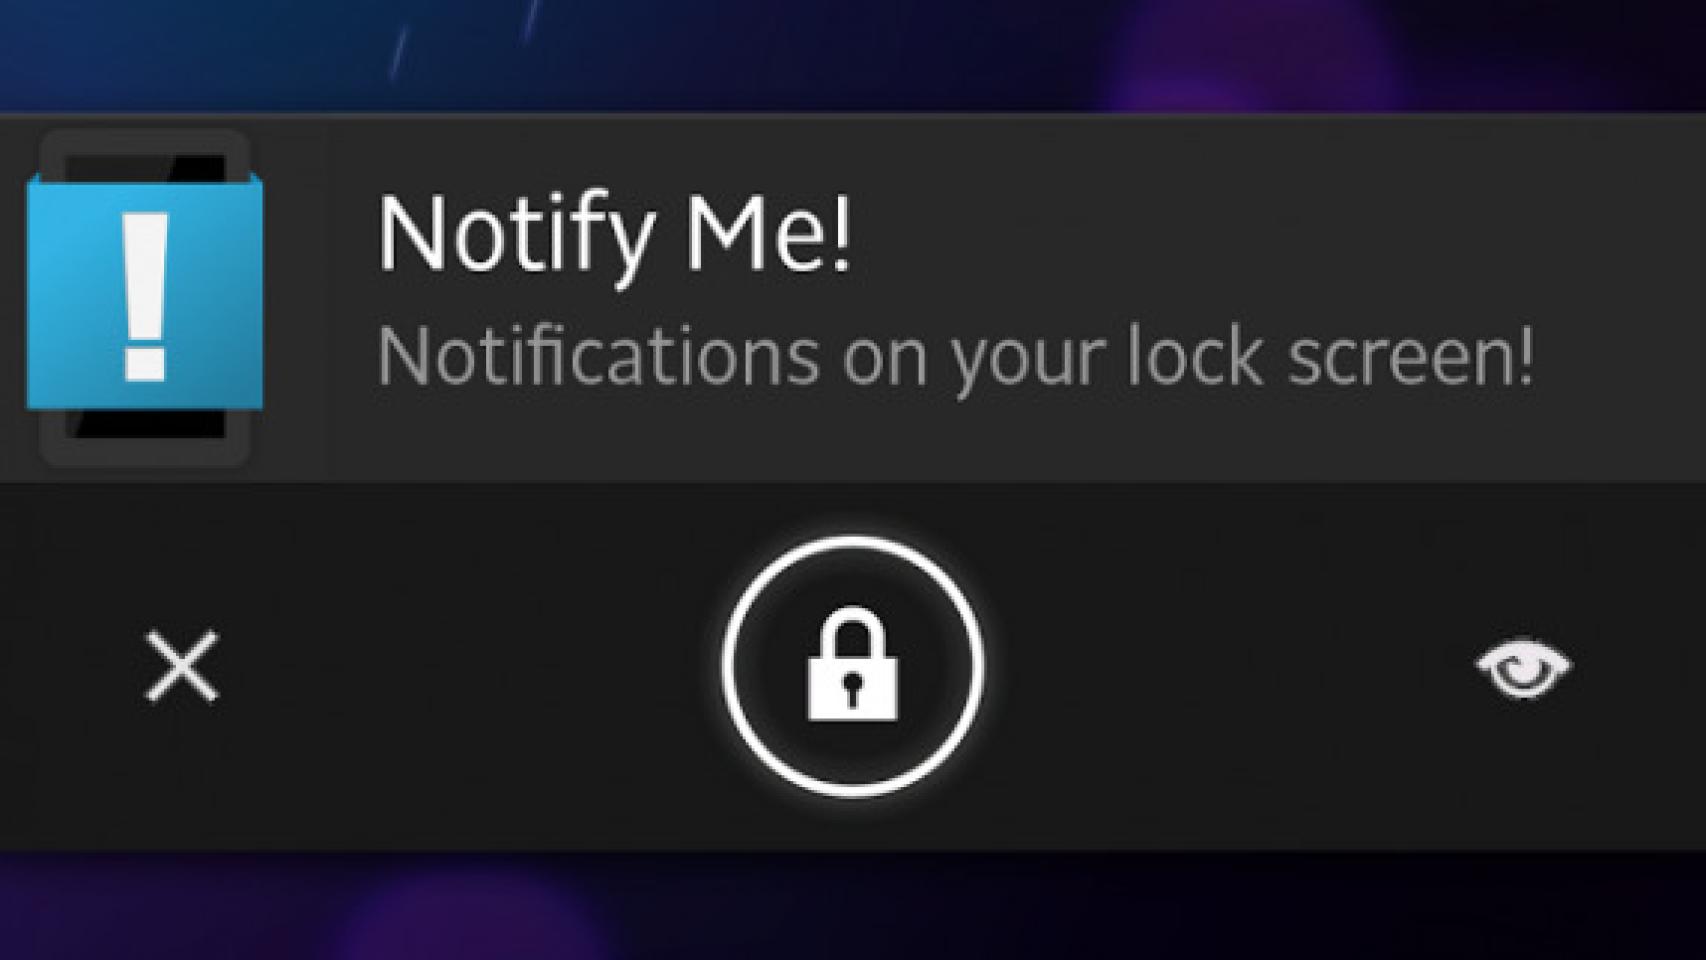 Notify Me!: Notificaciones en el lockscreen para cualquier app